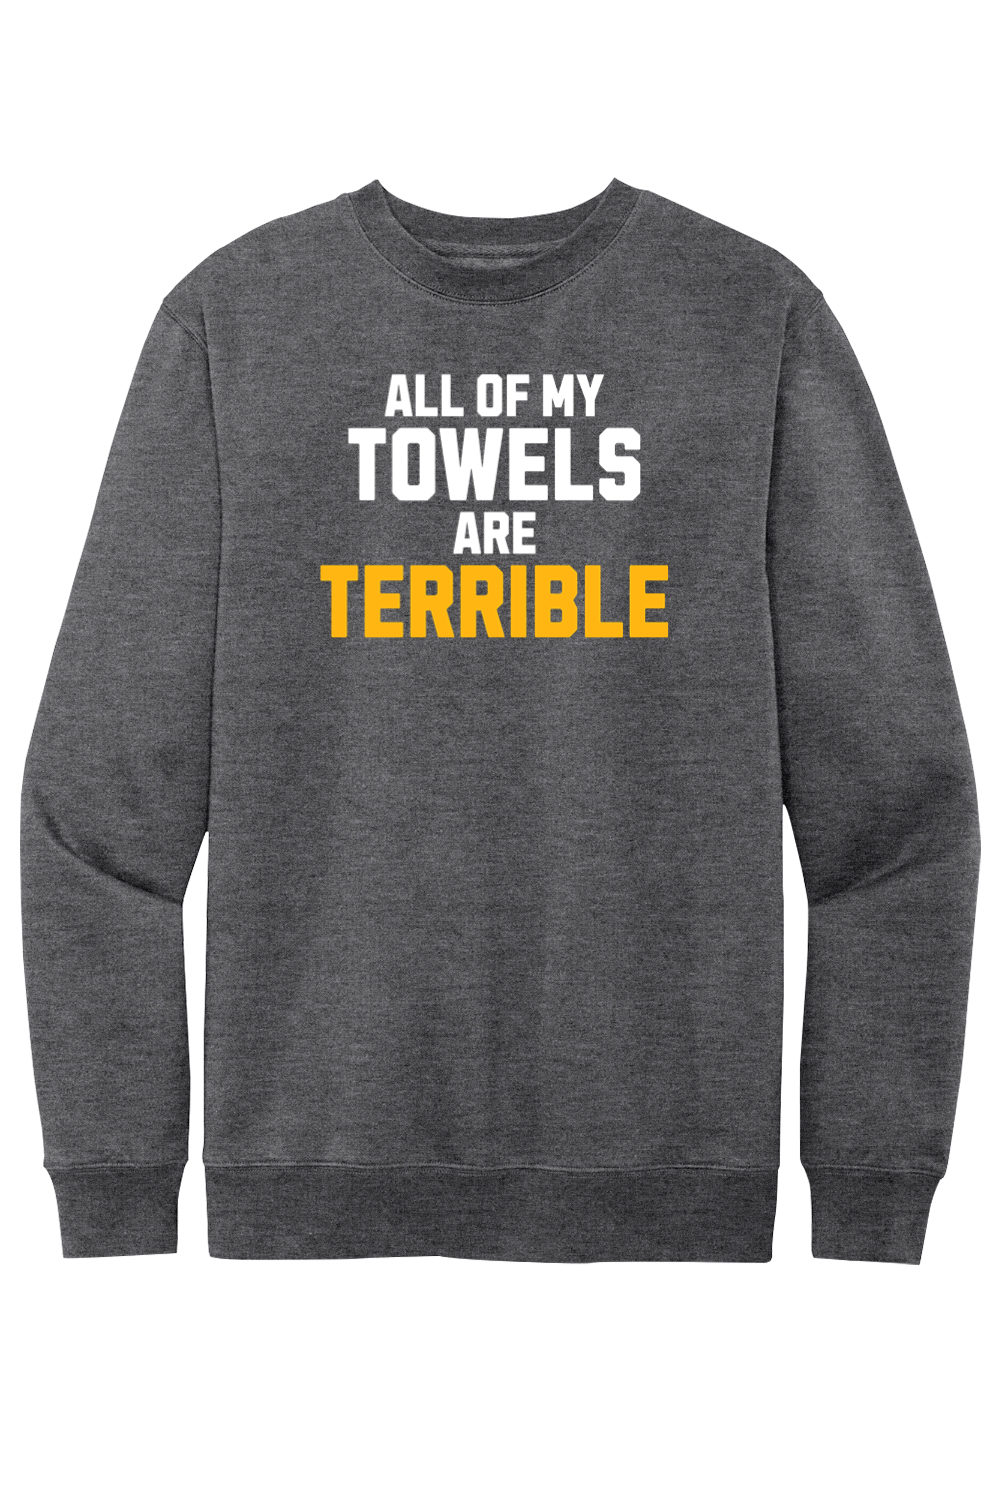 All of My Towels Are Terrible - Fleece Crewneck Sweatshirt - Yinzylvania